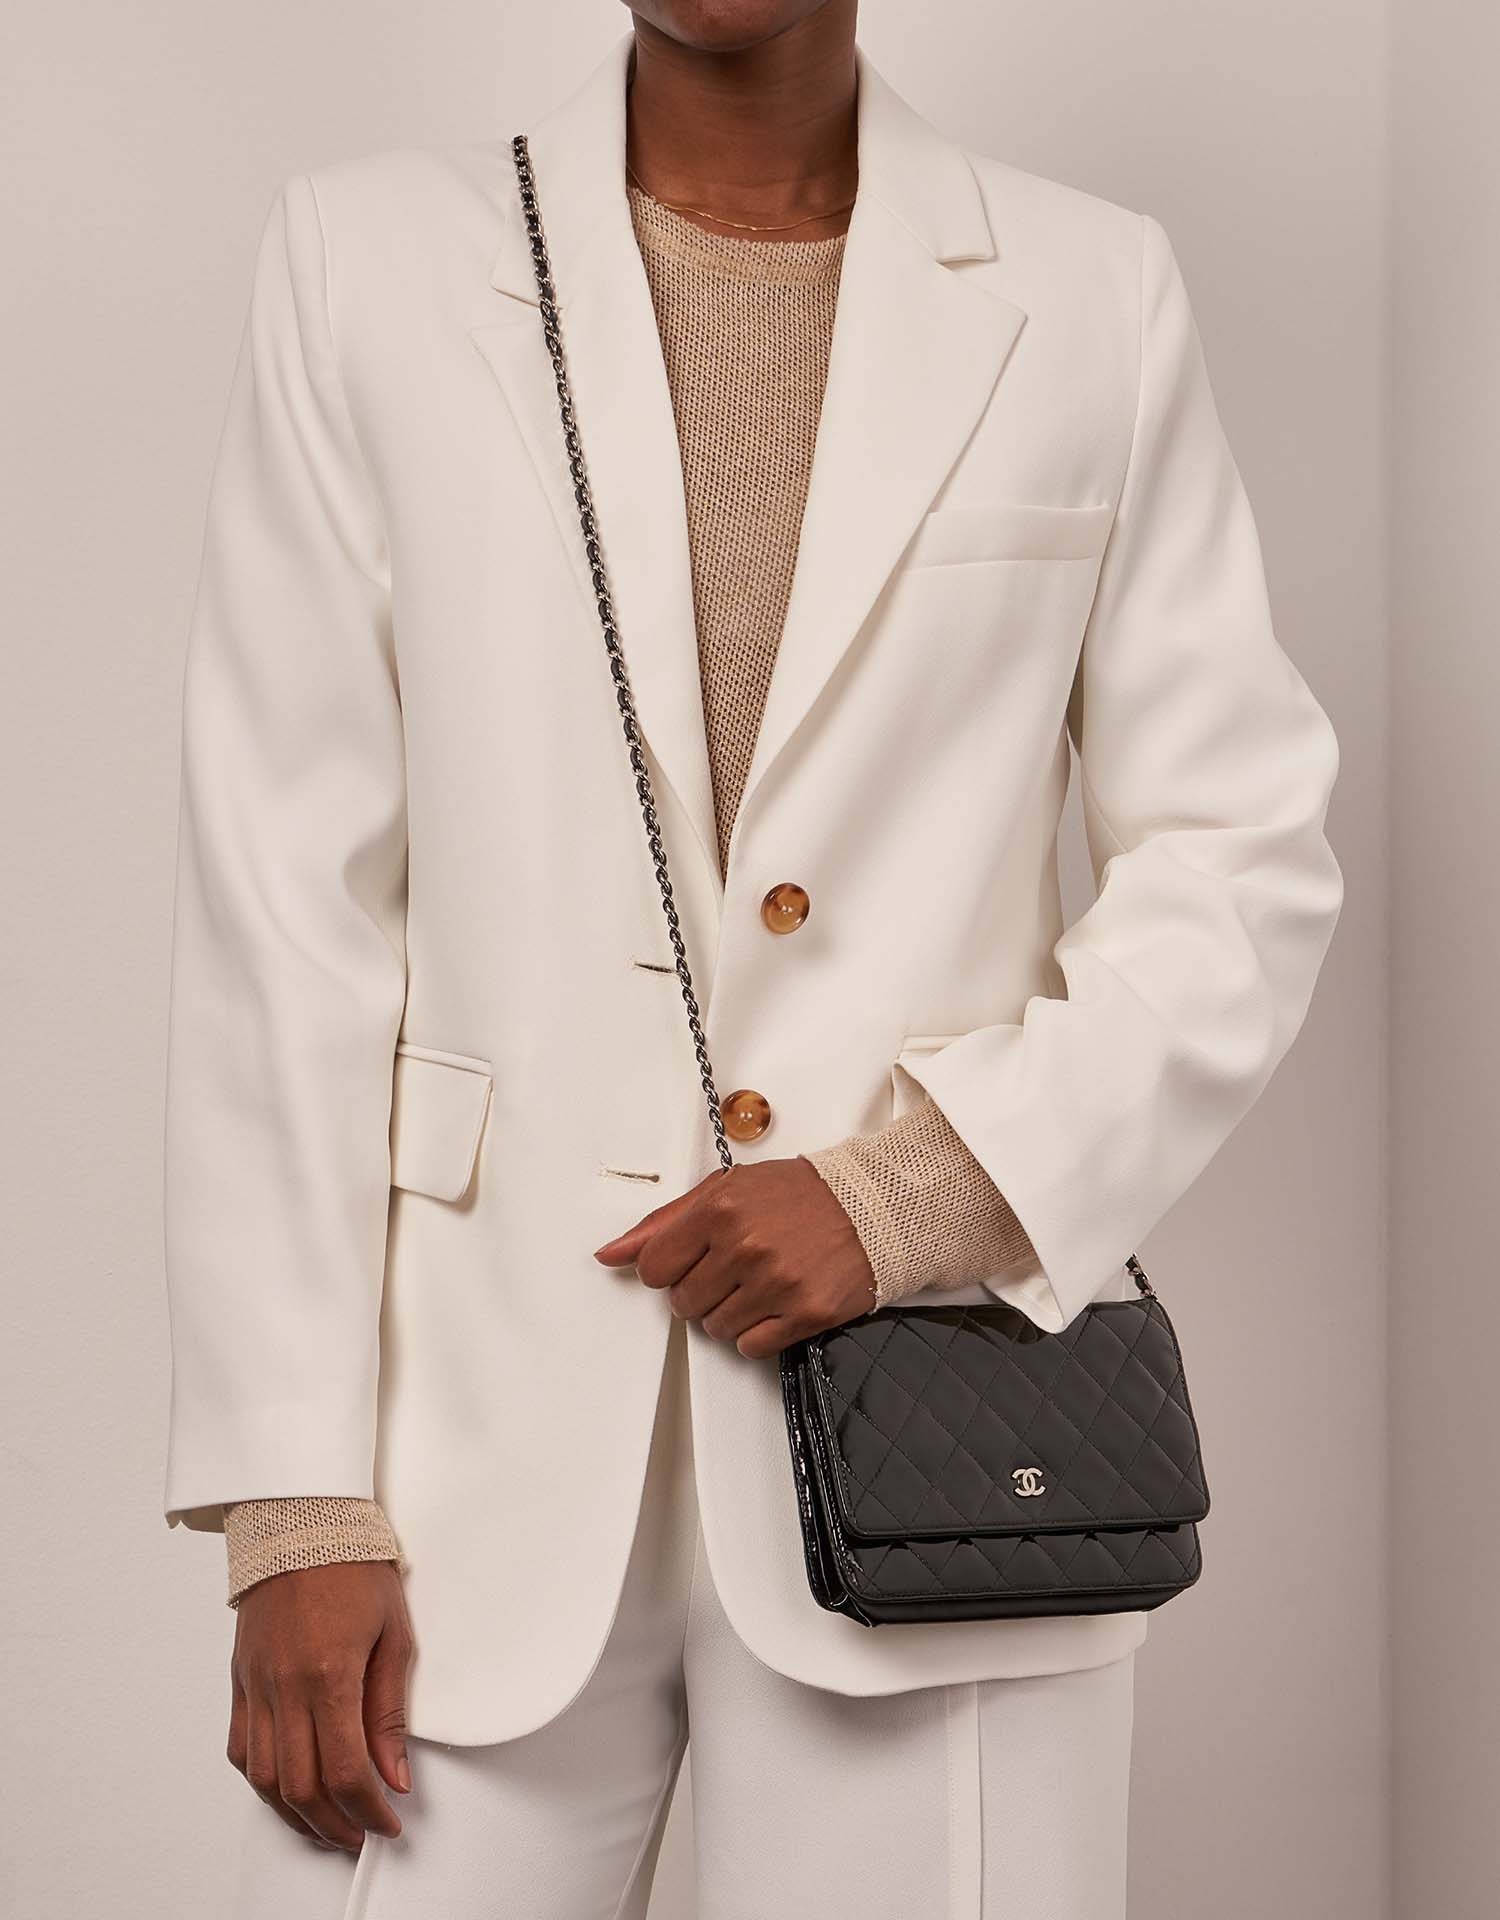 Chanel WOC Schwarz Größen Getragen | Verkaufen Sie Ihre Designer-Tasche auf Saclab.com